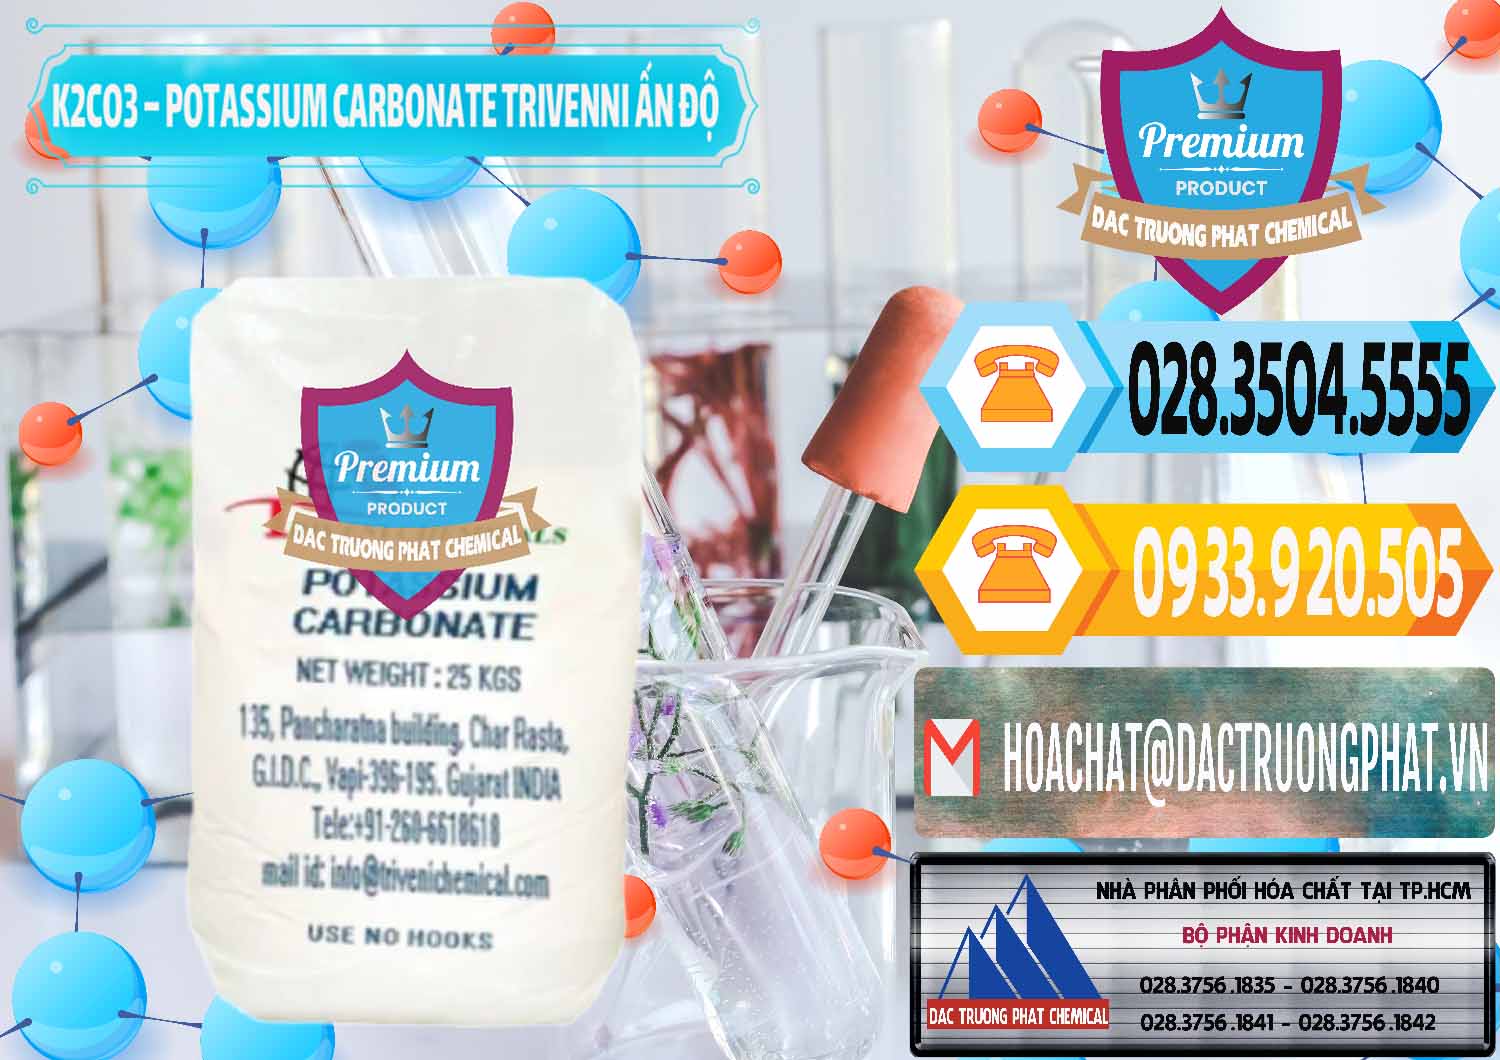 Đơn vị chuyên nhập khẩu & bán K2Co3 – Potassium Carbonate Trivenni Ấn Độ India - 0473 - Công ty kinh doanh ( cung cấp ) hóa chất tại TP.HCM - hoachattayrua.net